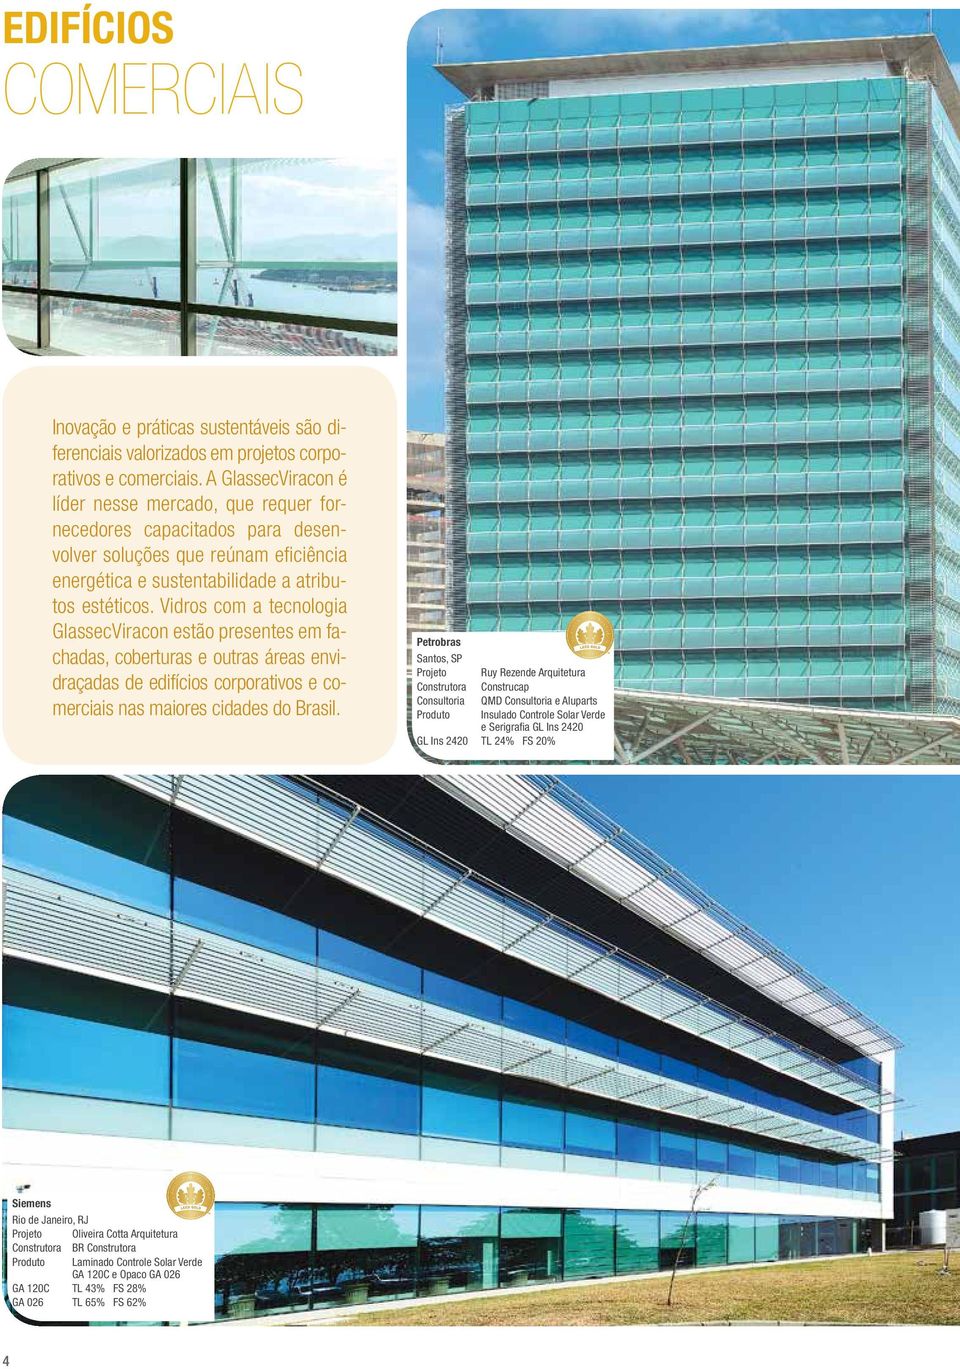 Vidros com a tecnologia GlassecViracon estão presentes em fachadas, coberturas e outras áreas envidraçadas de edifícios corporativos e comerciais nas maiores cidades do Brasil.